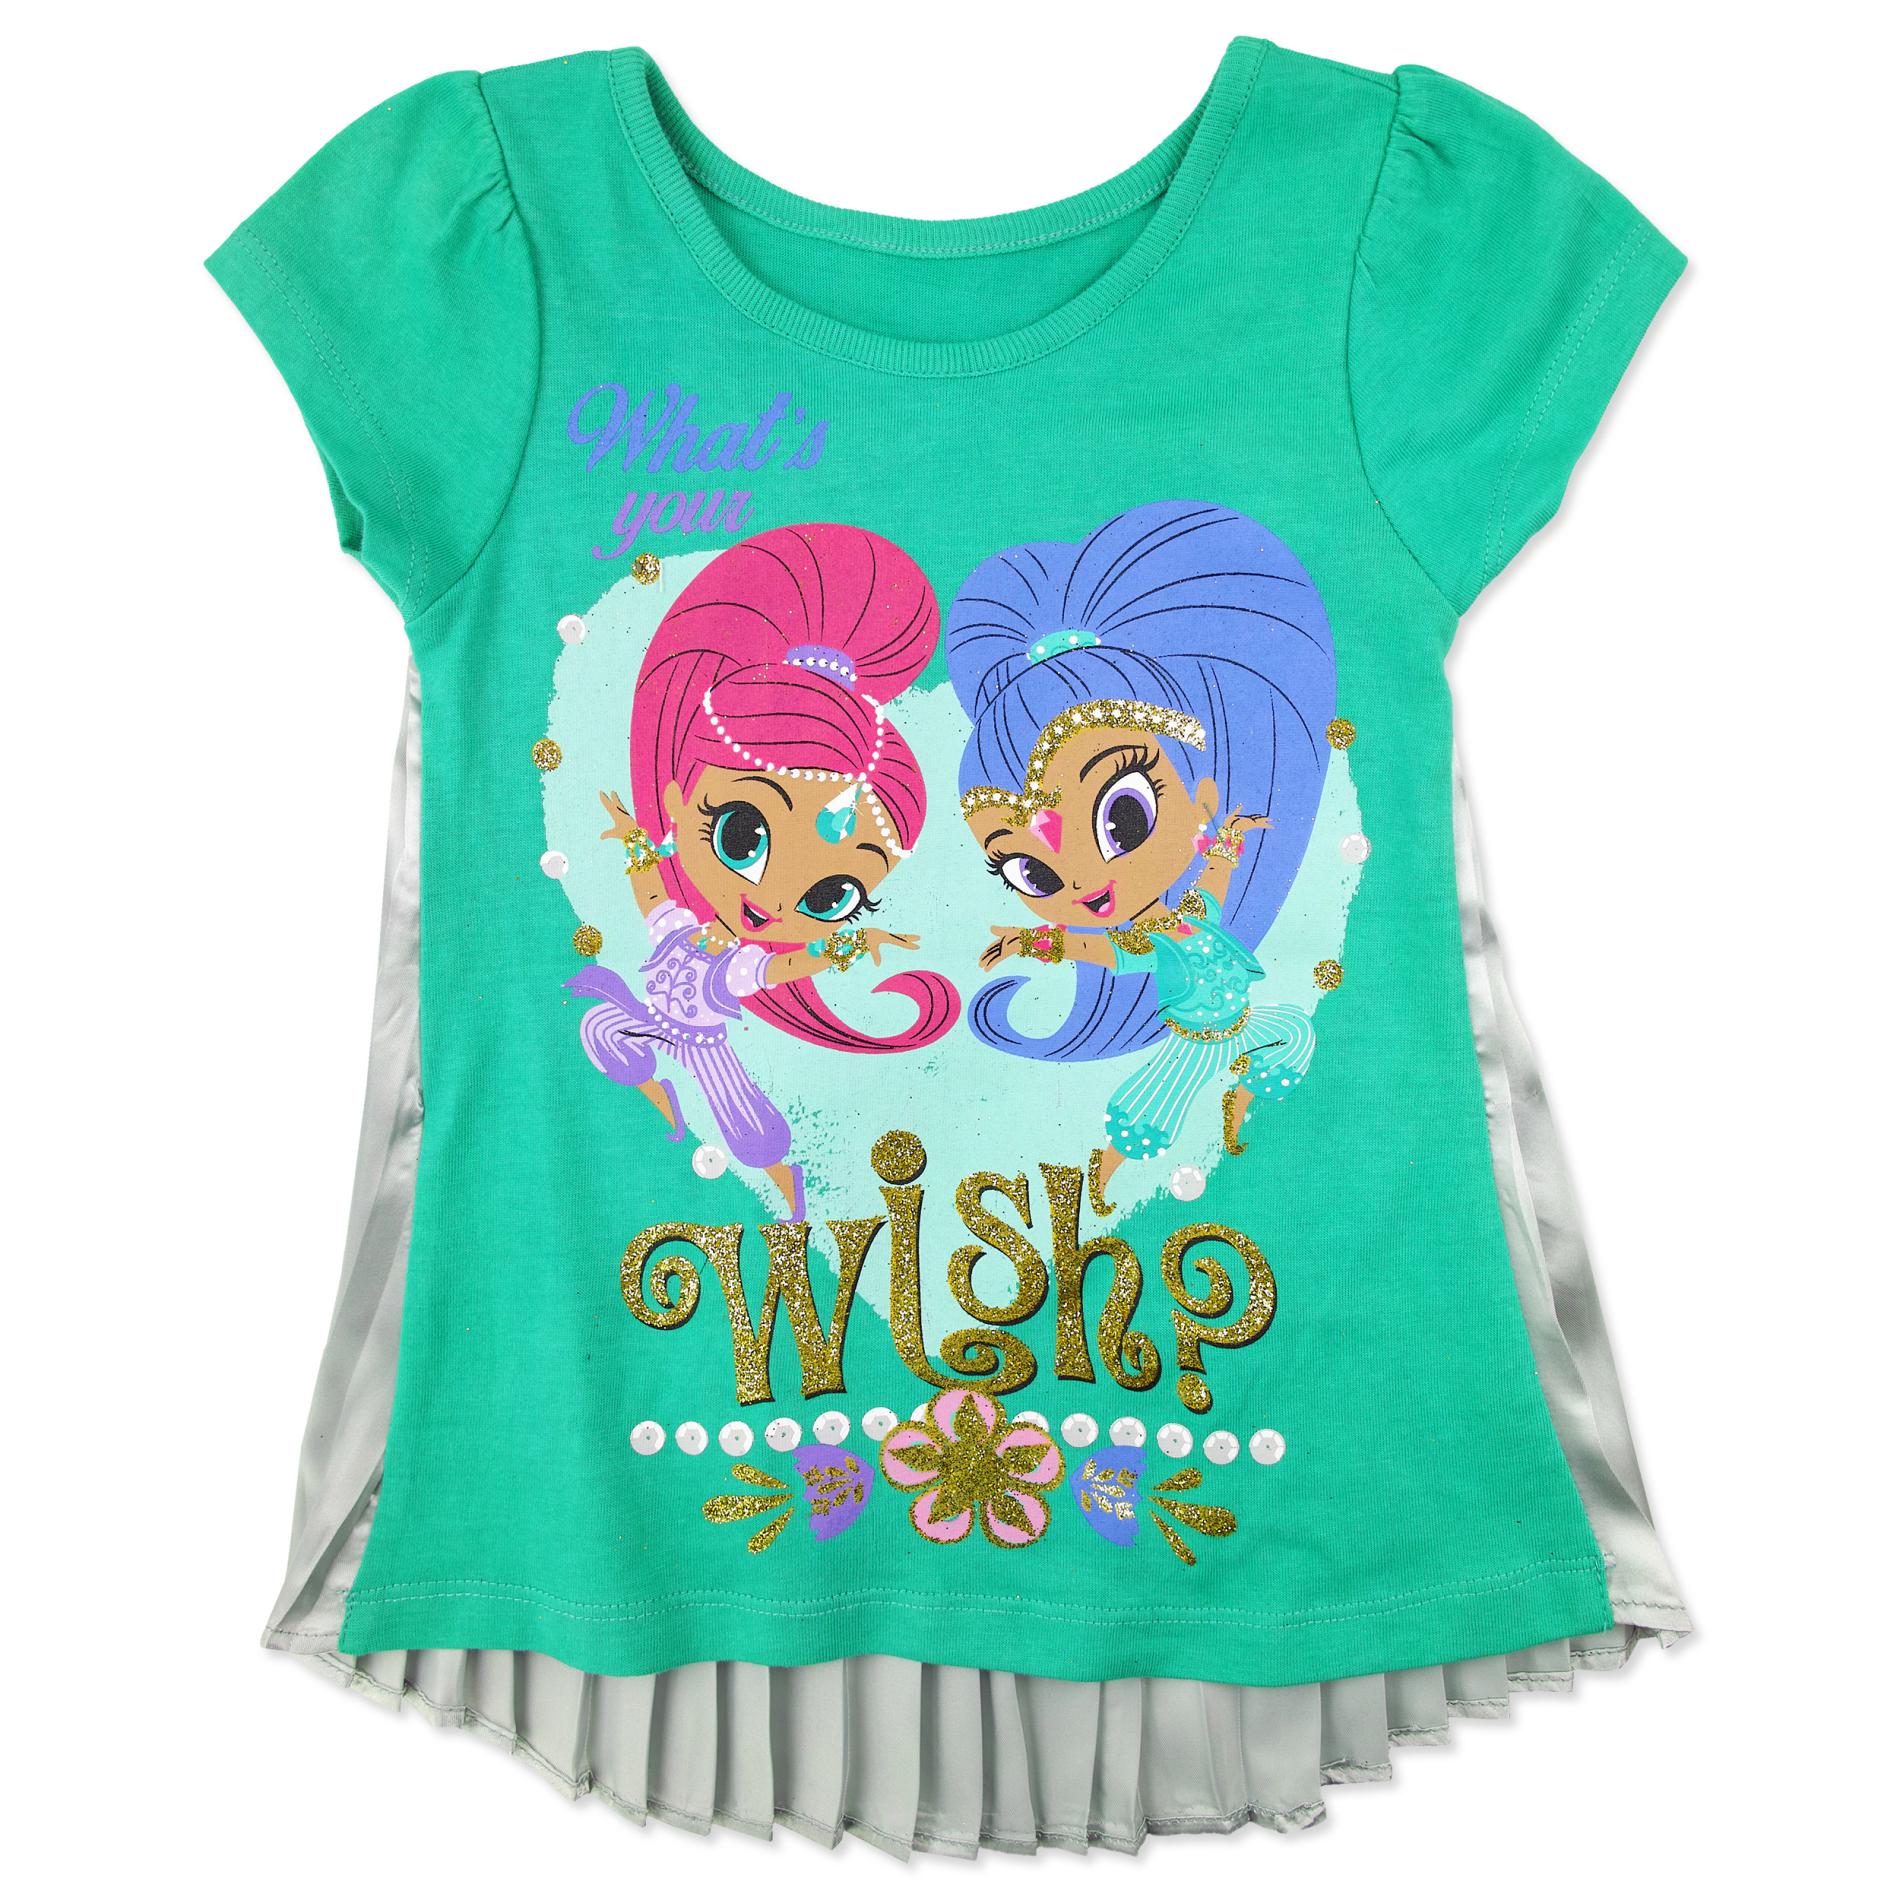 Nickelodeon Shimmer & Shine Girls' Graphic T-Shirt